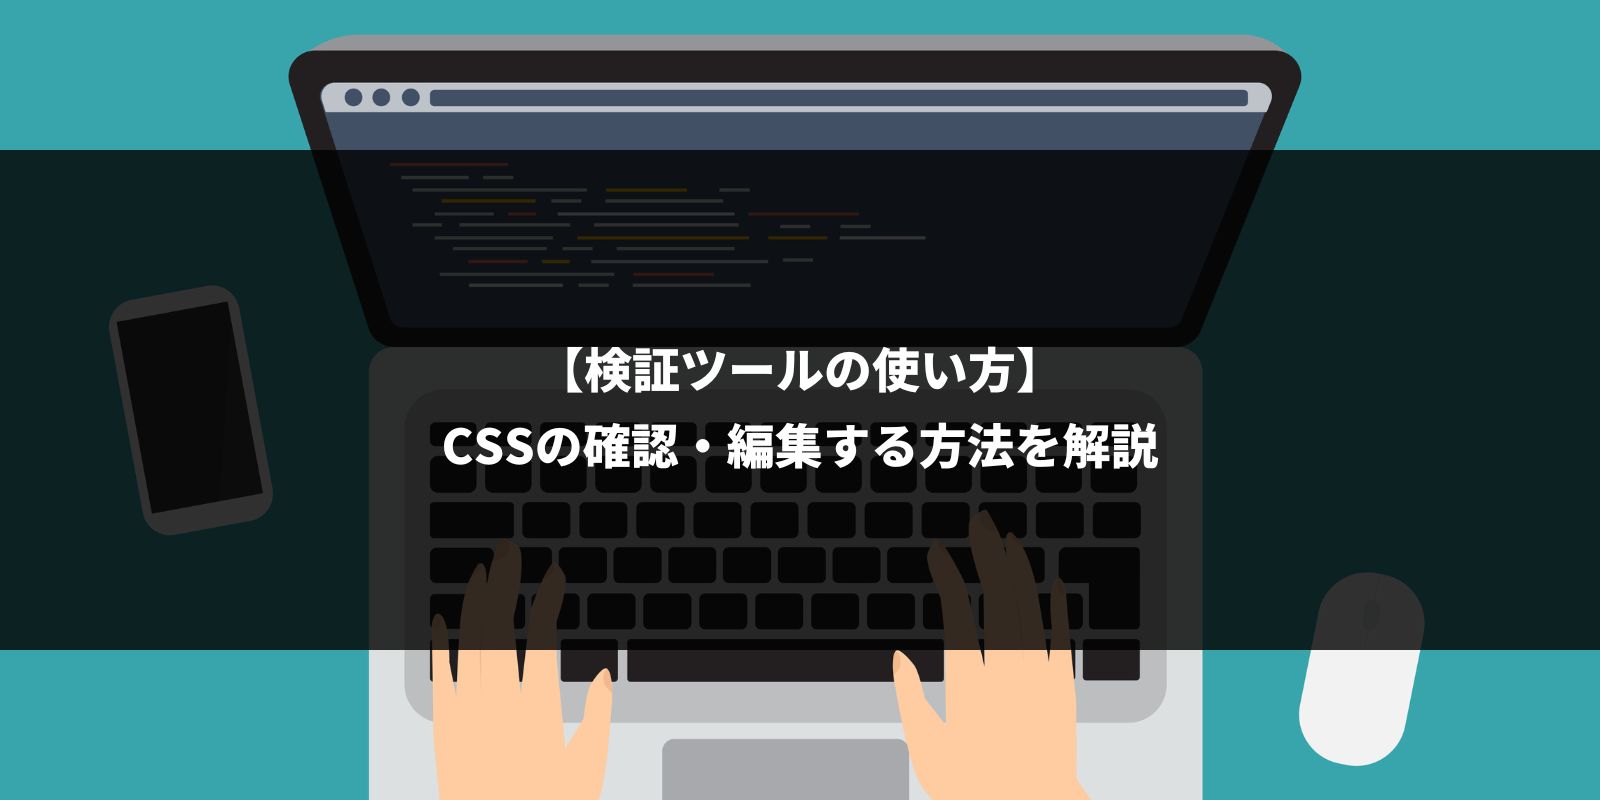 【検証ツールの使い方】CSSの確認・編集する方法を解説。